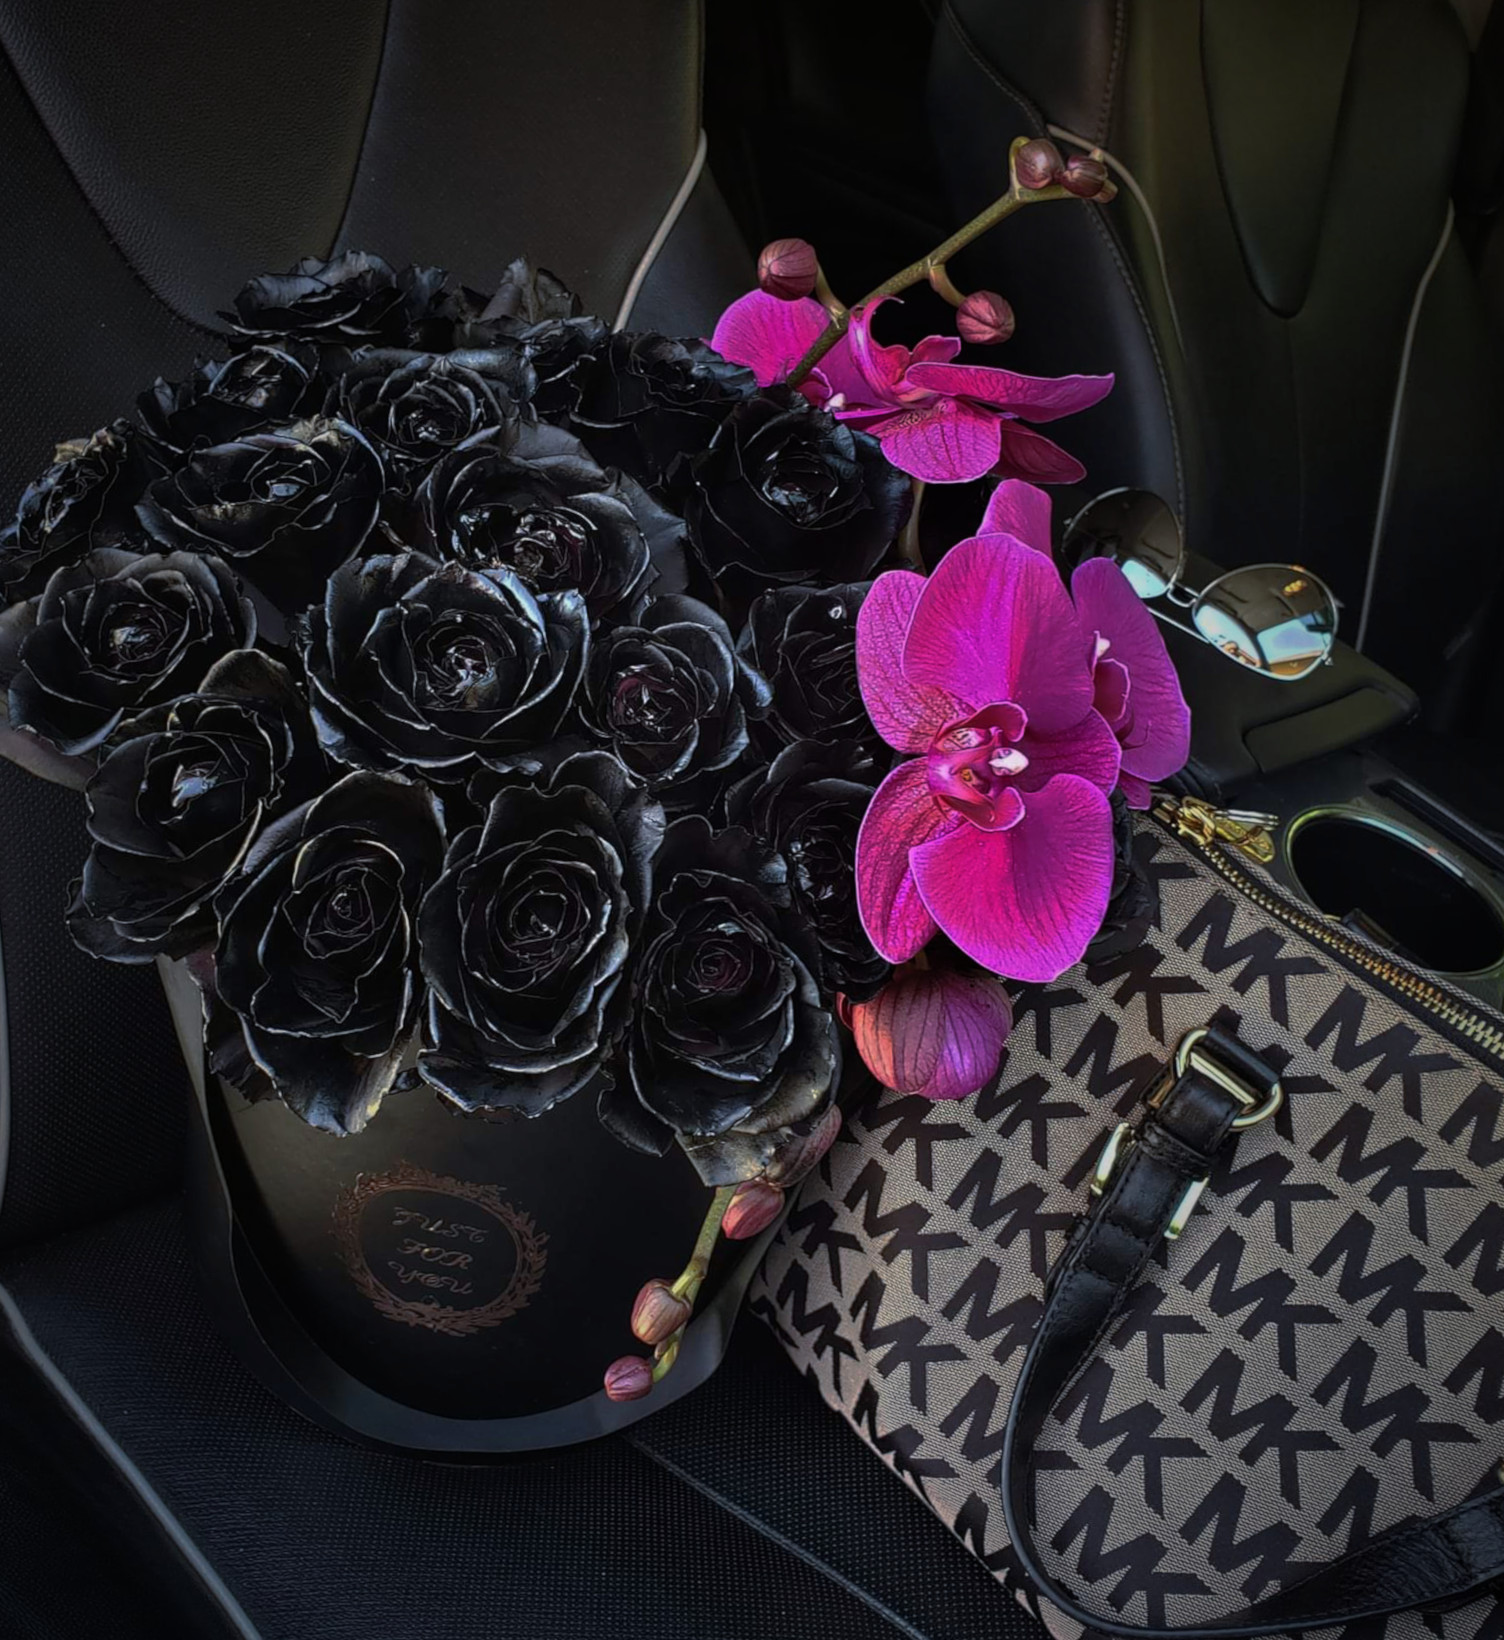 Letizia's Exquisite Arrangements - Custom Flower Arrangements Delivery in California